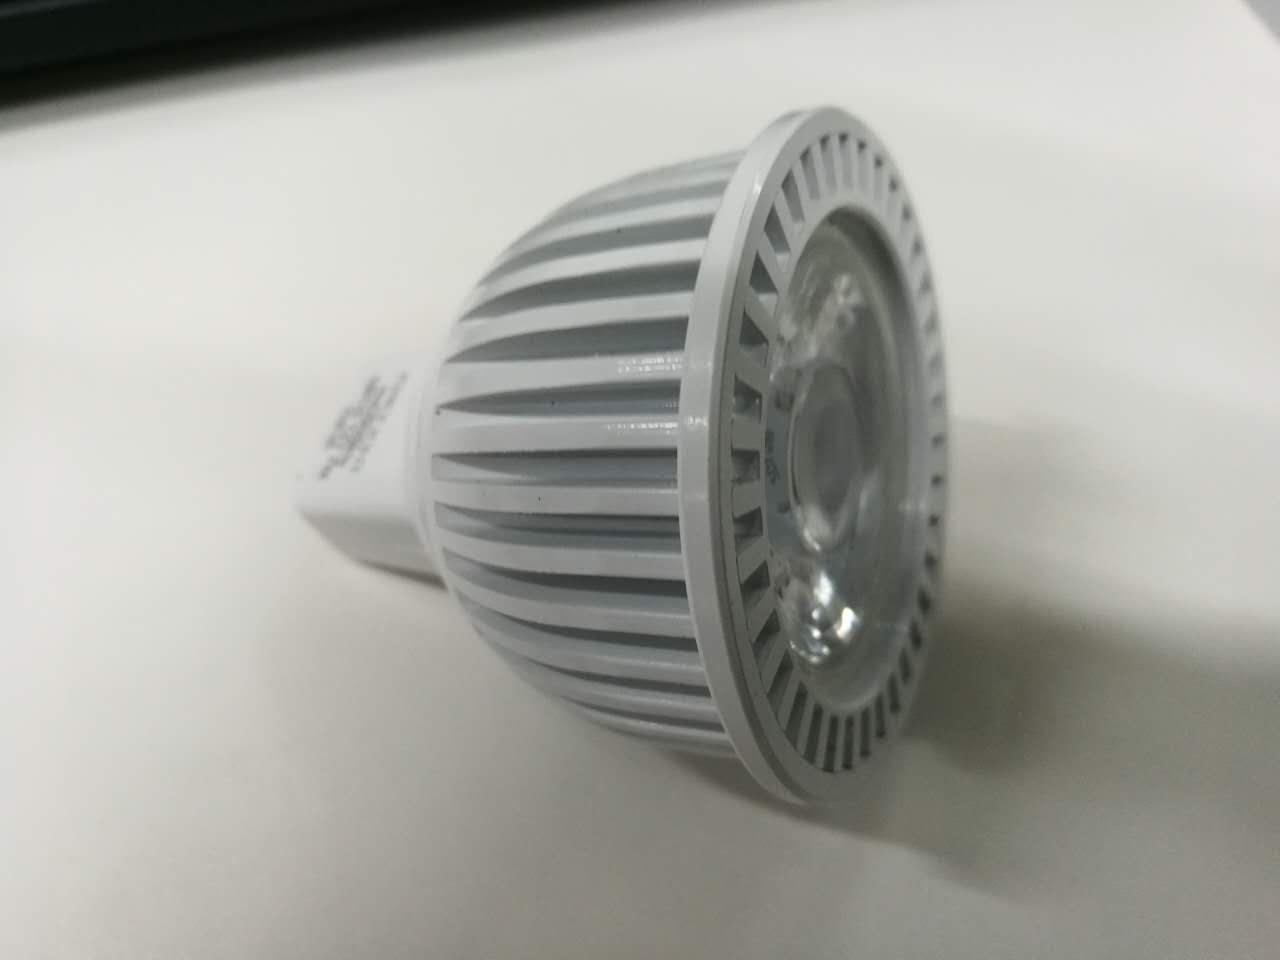 GU10-7W LED par light